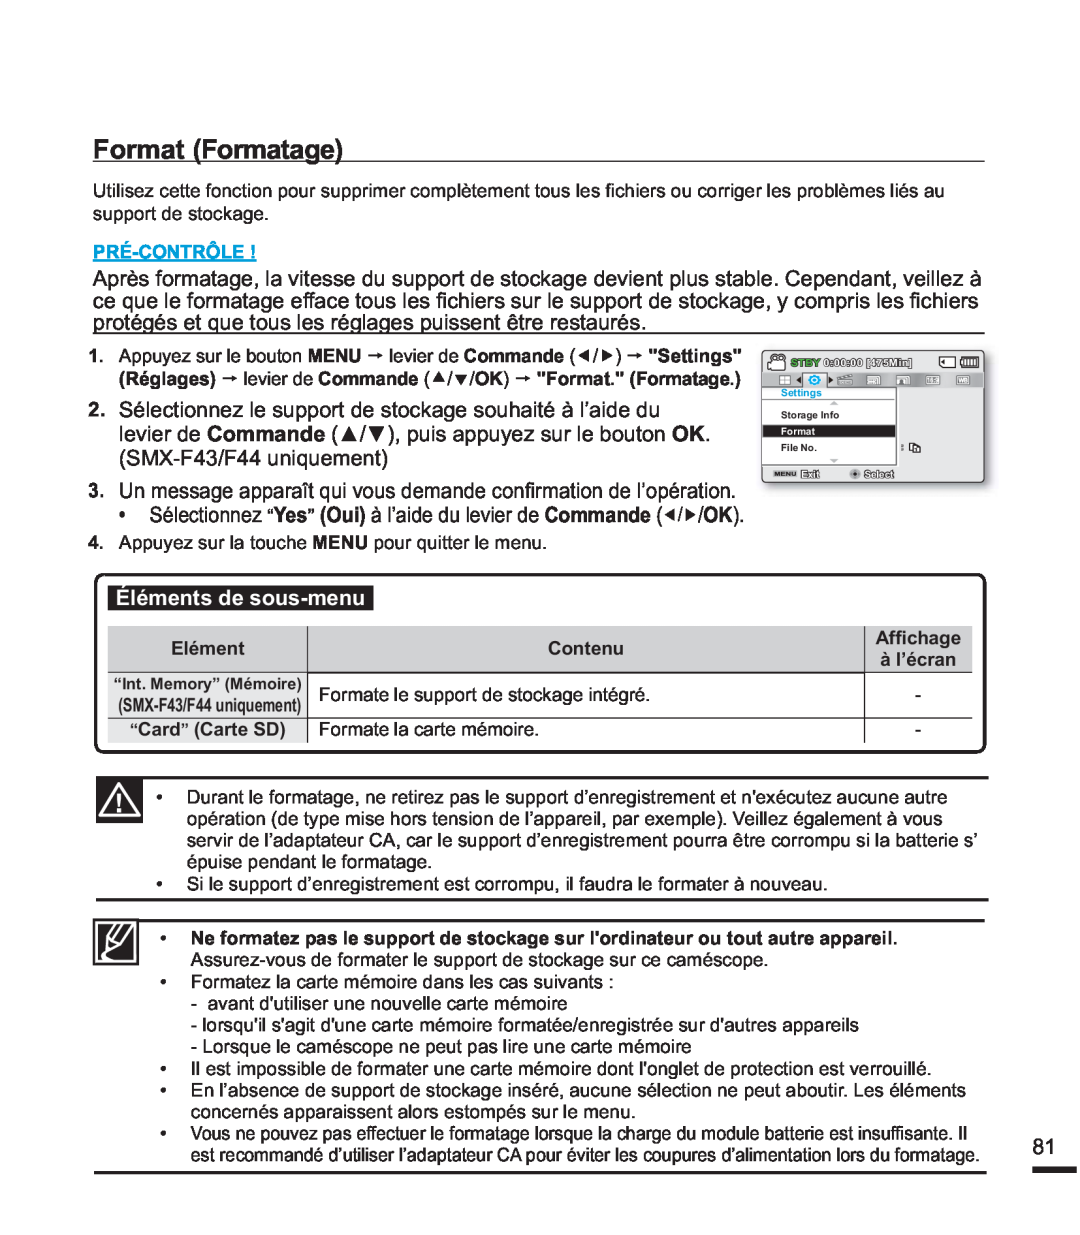 Samsung SMX-F44BP/MEA manual Format Formatage, Éléments de sous-menu, VxssruwGhVwrfndjh, Pré-Contrôle, Elément, Contenu 